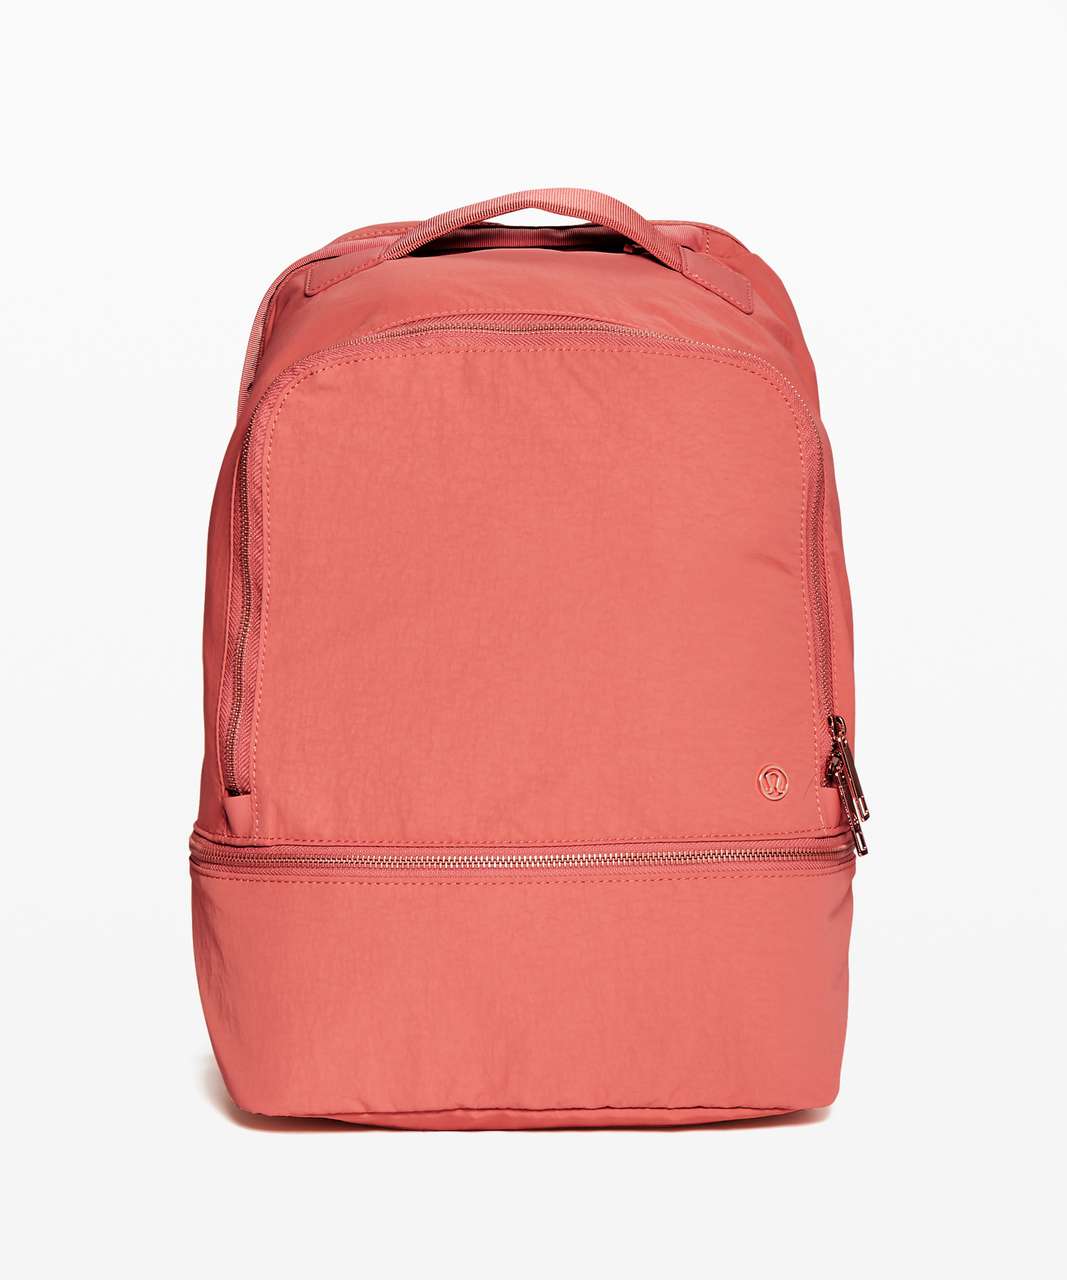 Lululemon City Adventurer Backpack *17L - Rustic Coral